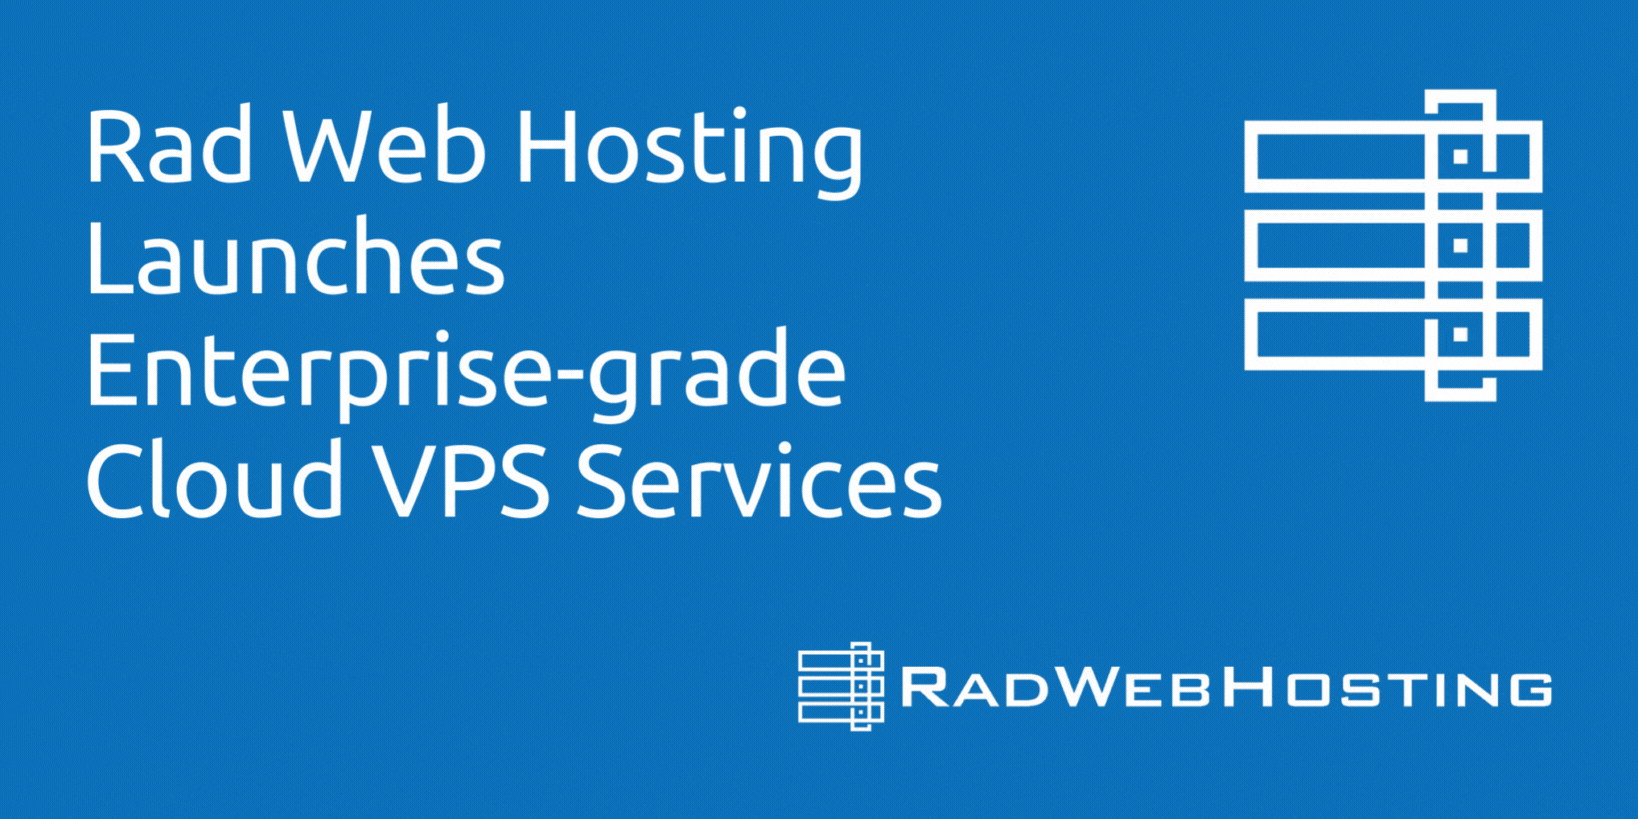 Rad Web Hosting Launches Enterprise-grade Cloud VPS Services